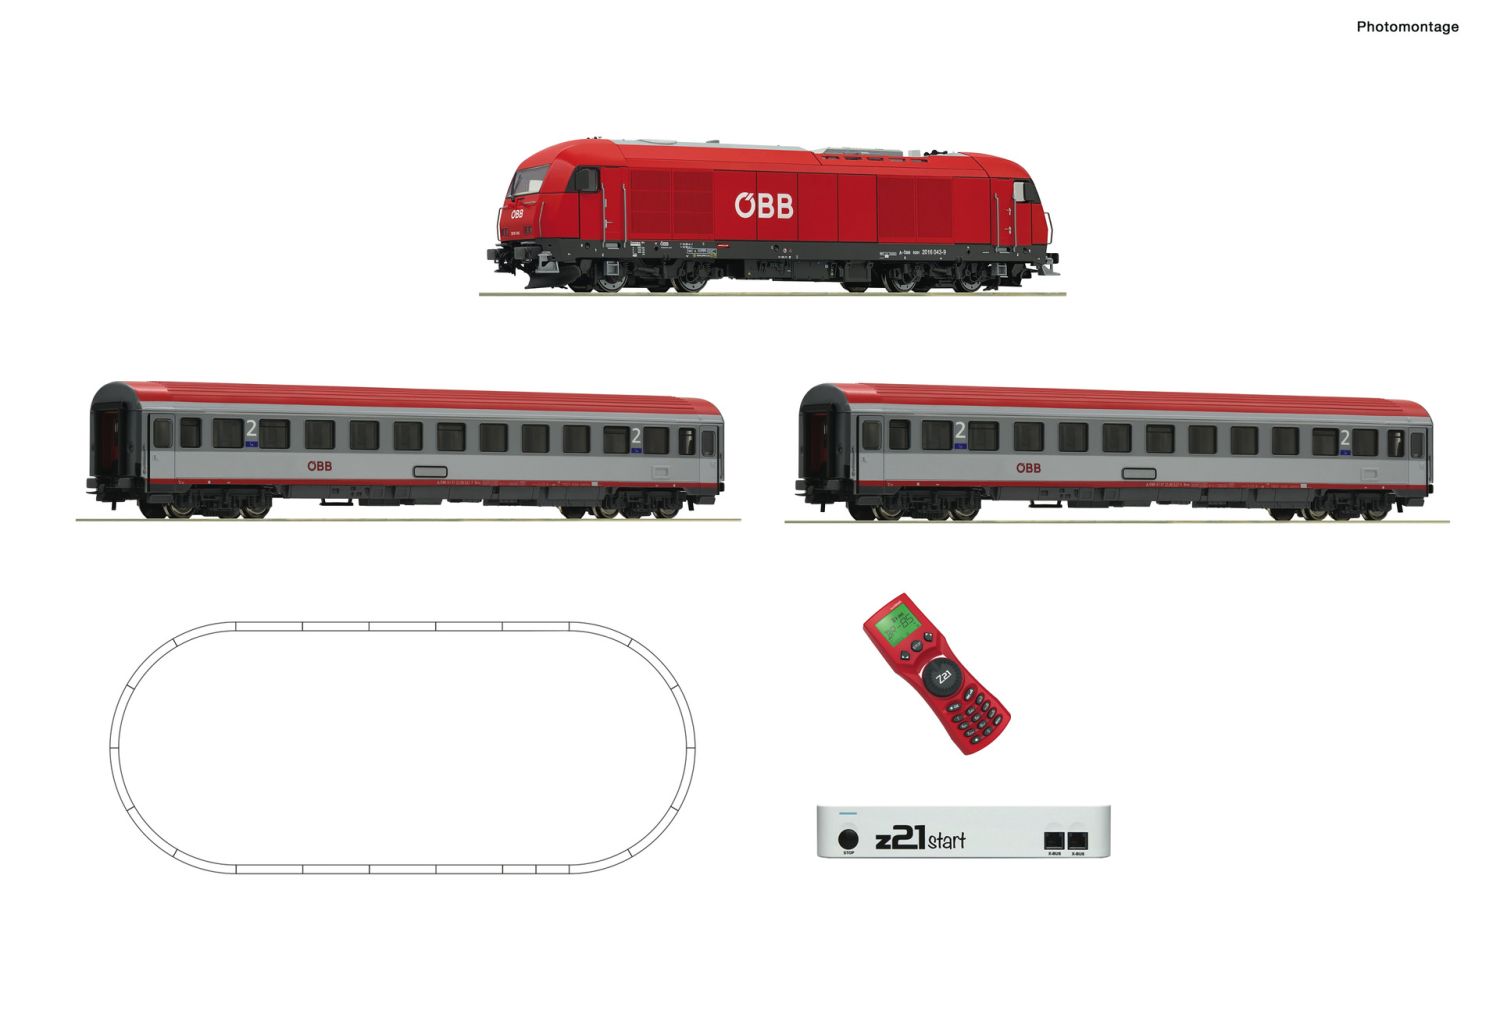 Roco 51341 - Digitales Startset mit Rh 2016 und Personenzug, ÖBB, Ep.VI, z21start und MultiMaus